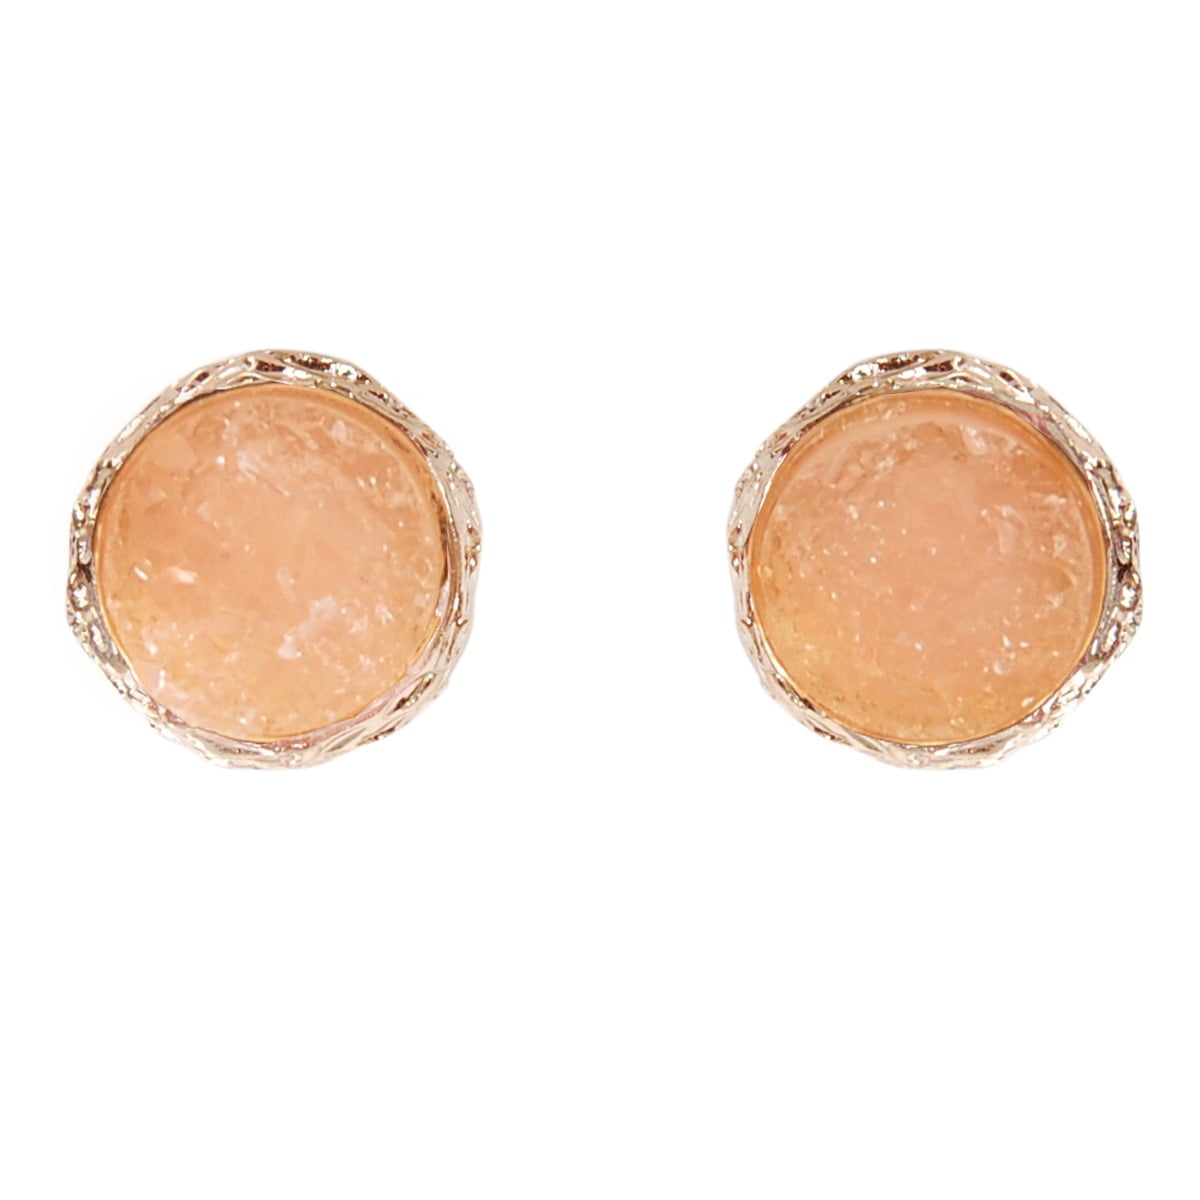 Golden Druzy Gemstone Round Button Designer 925 Sterling Silver Stud Earring